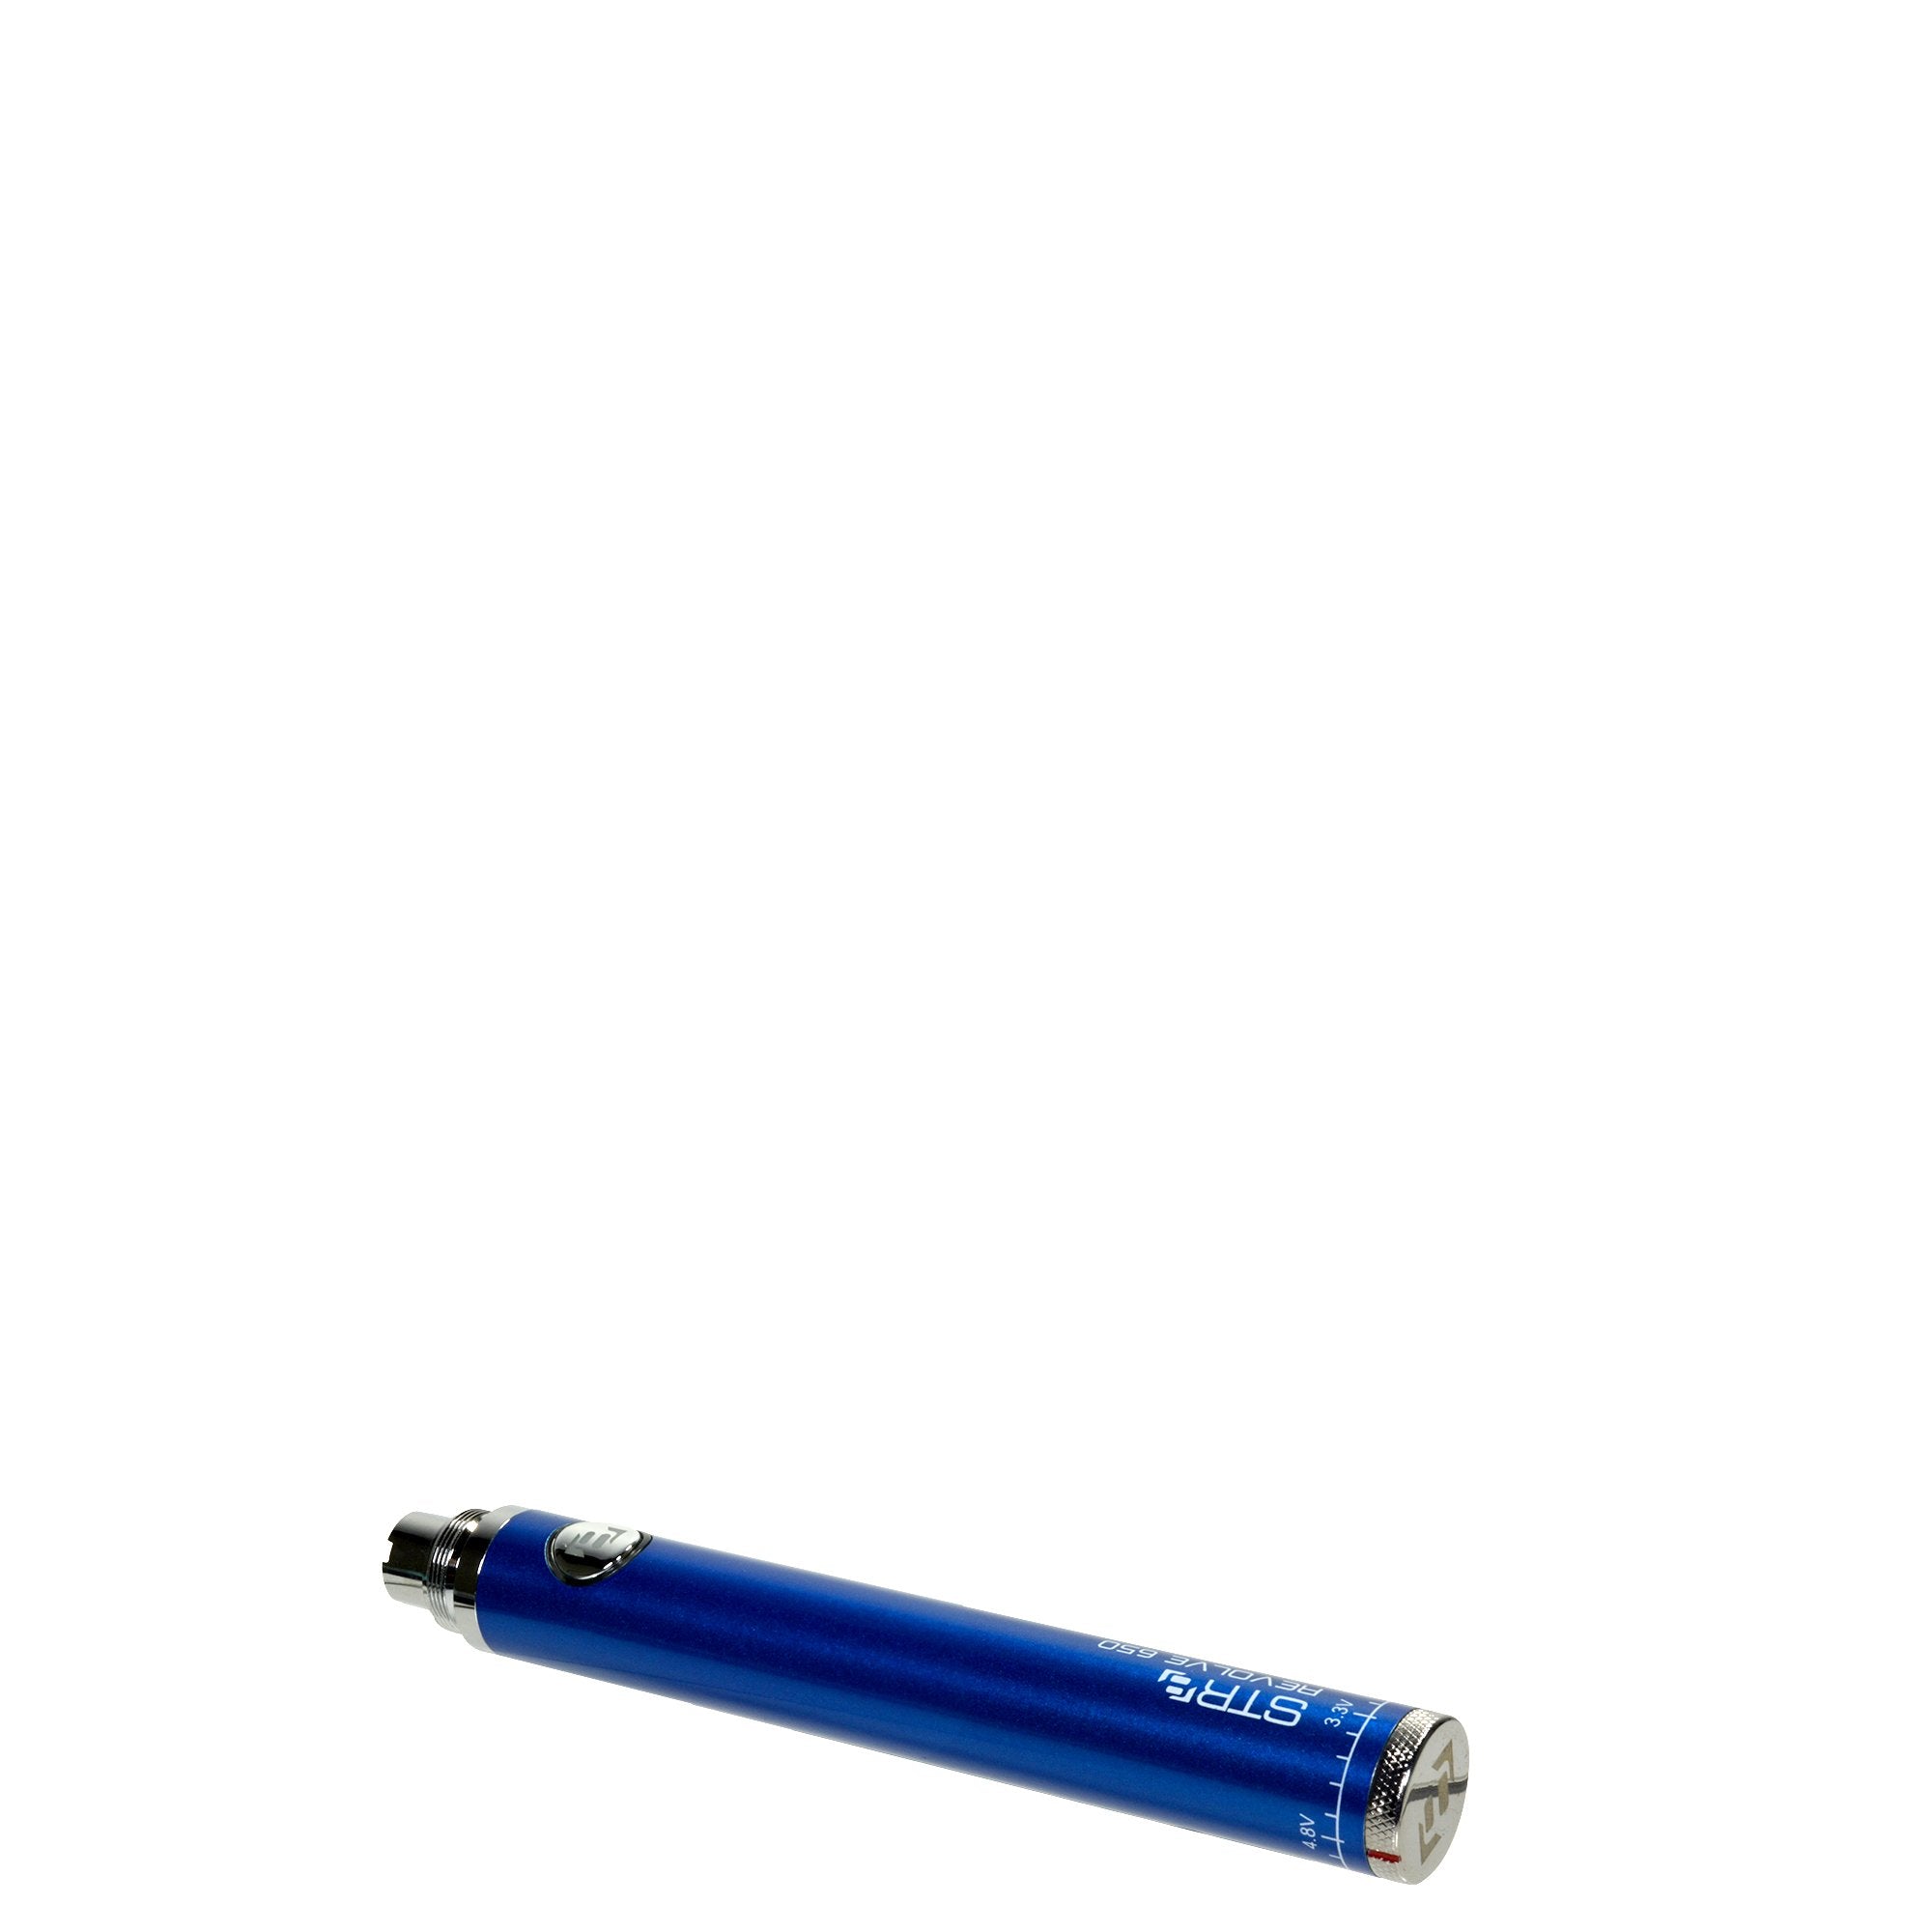 STR8 | Revolve Evod Vape Battery | 650mAh - Blue - 5 Count - 4